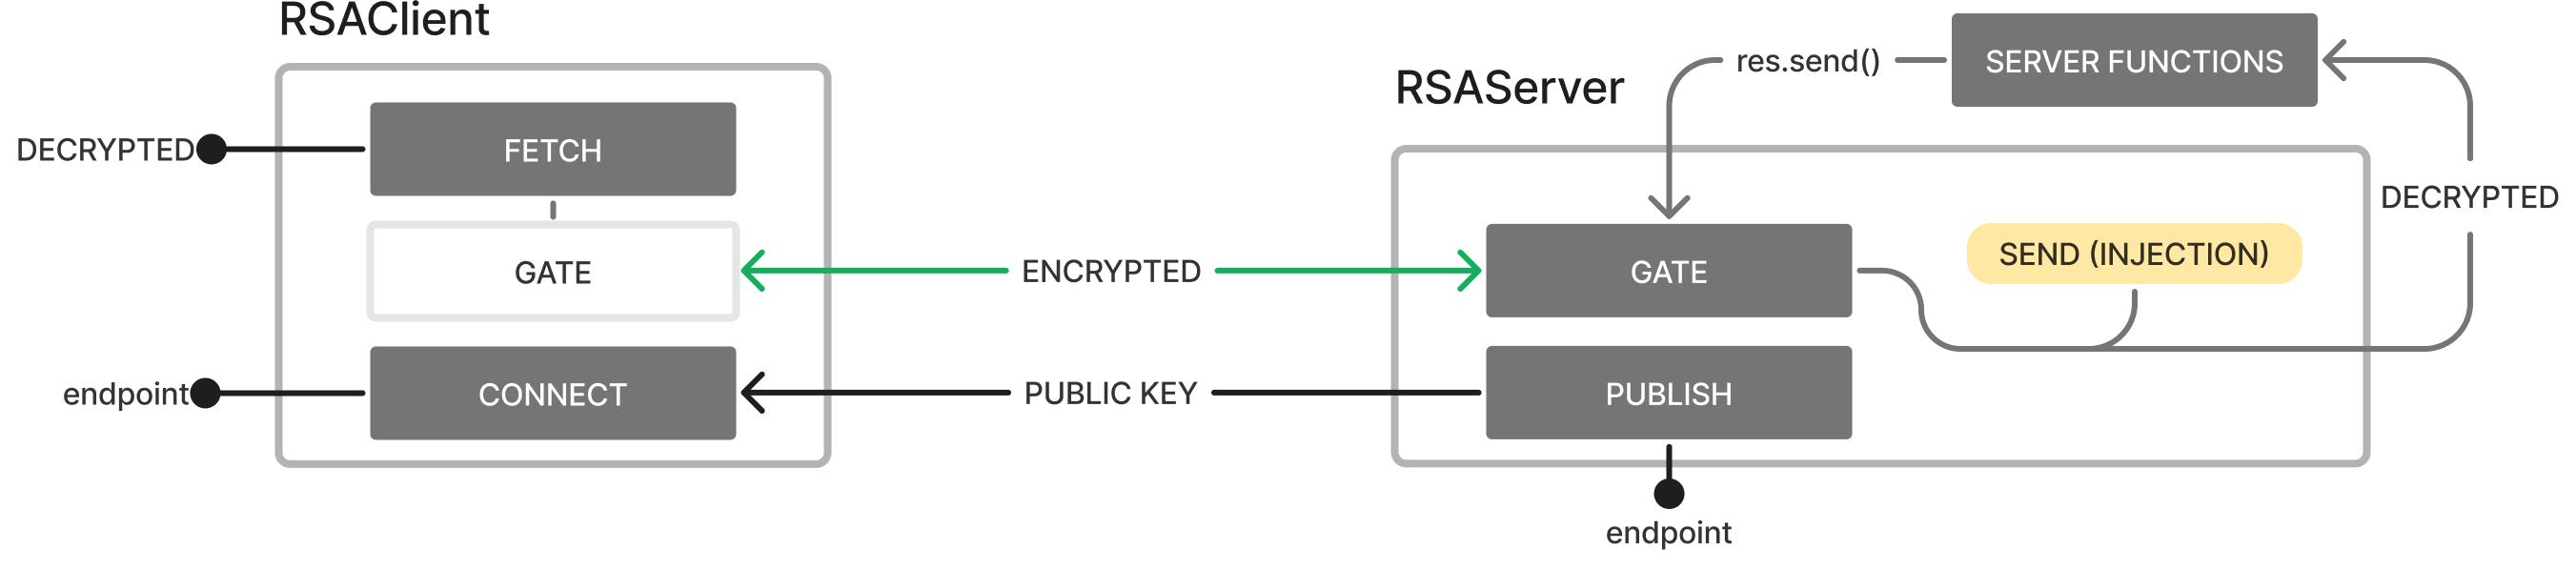 RSA Client Image